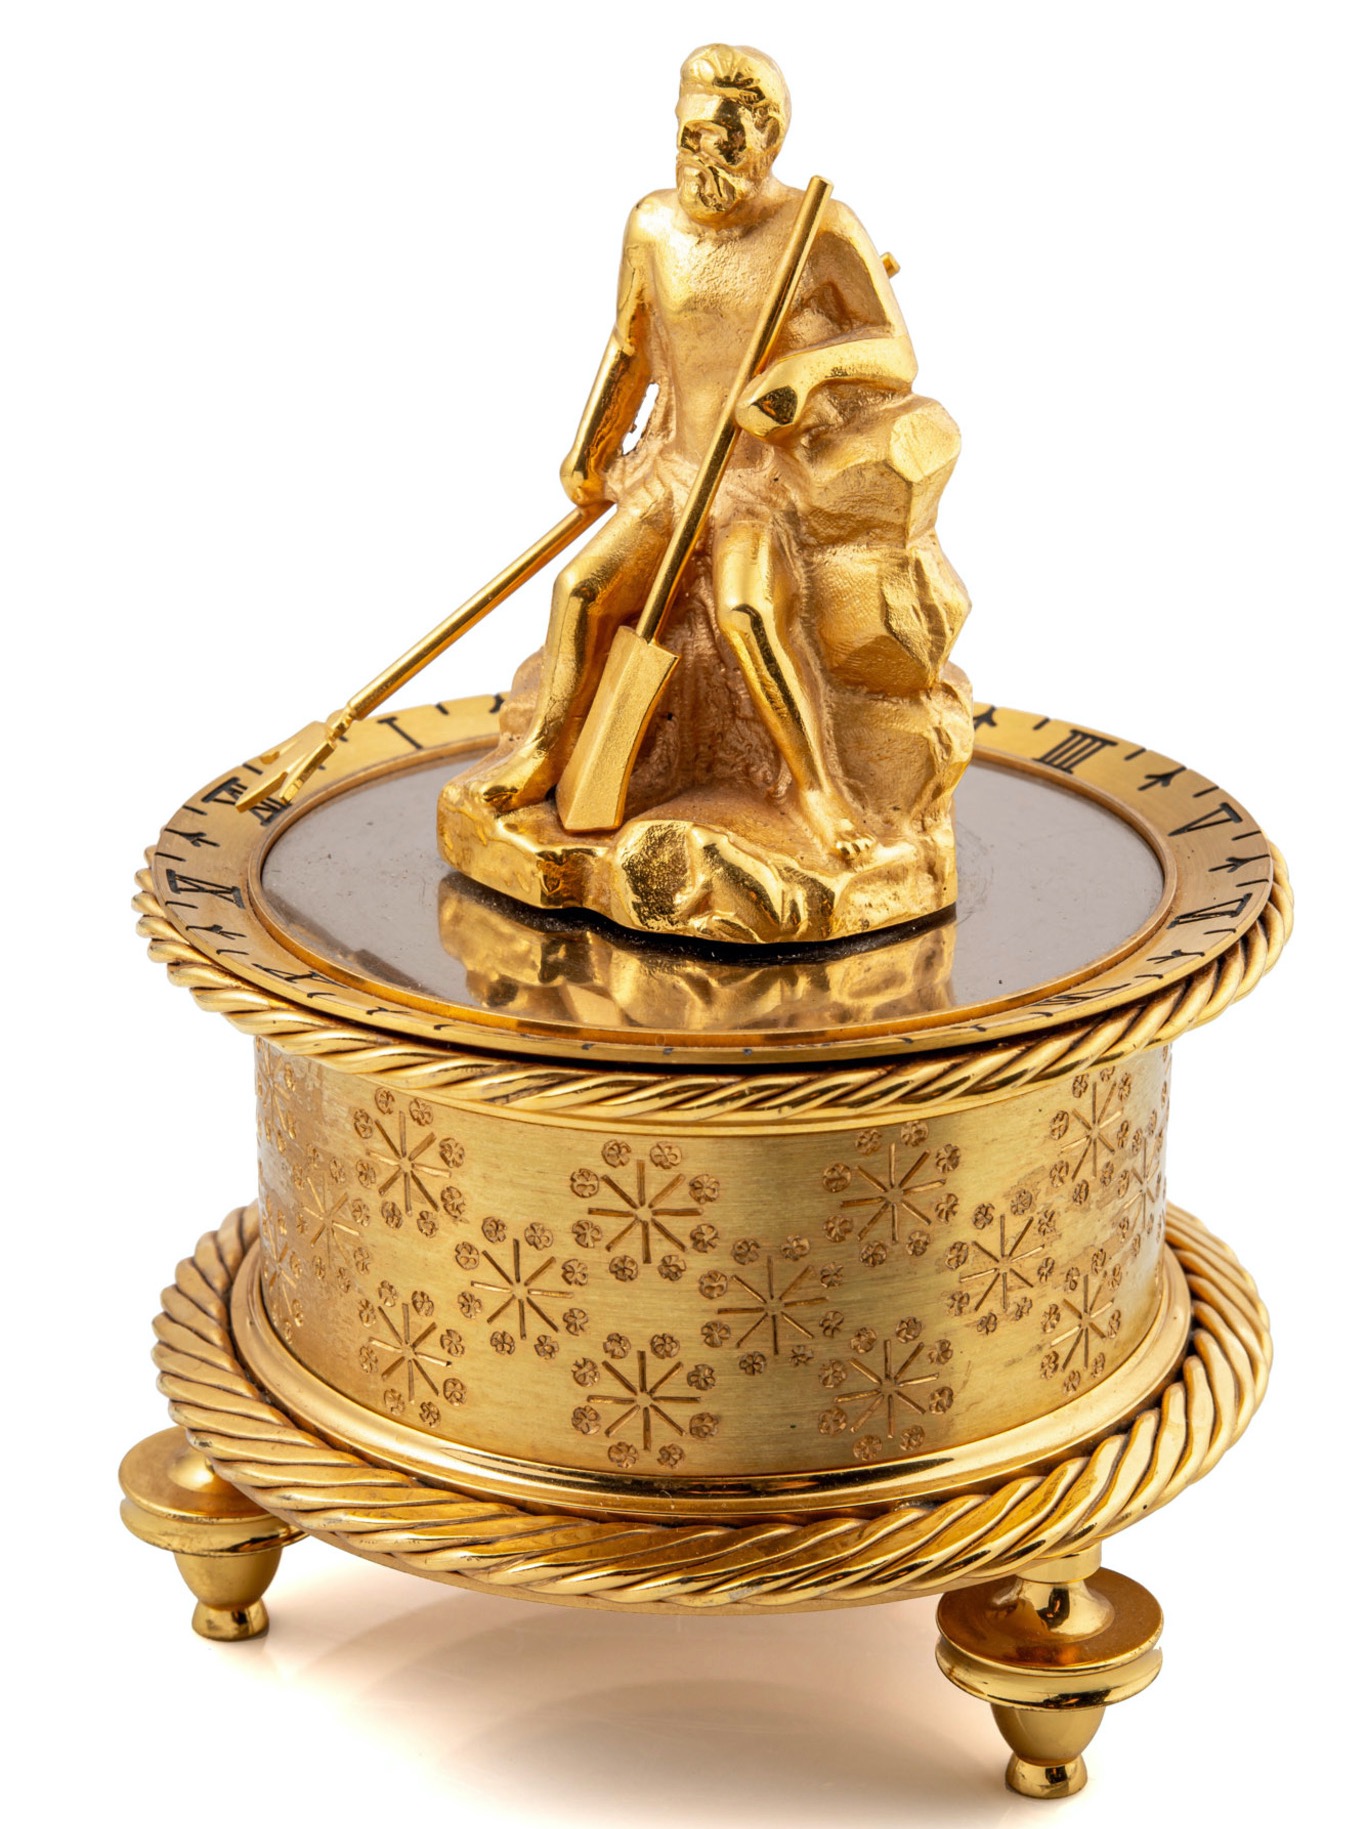 Chiếc đồng hồ để bàn này được sản xuất vào khoảng năm 1970, làm từ đồng thau mạ vàng với biểu tượng thần Poseidon tại chính giữa